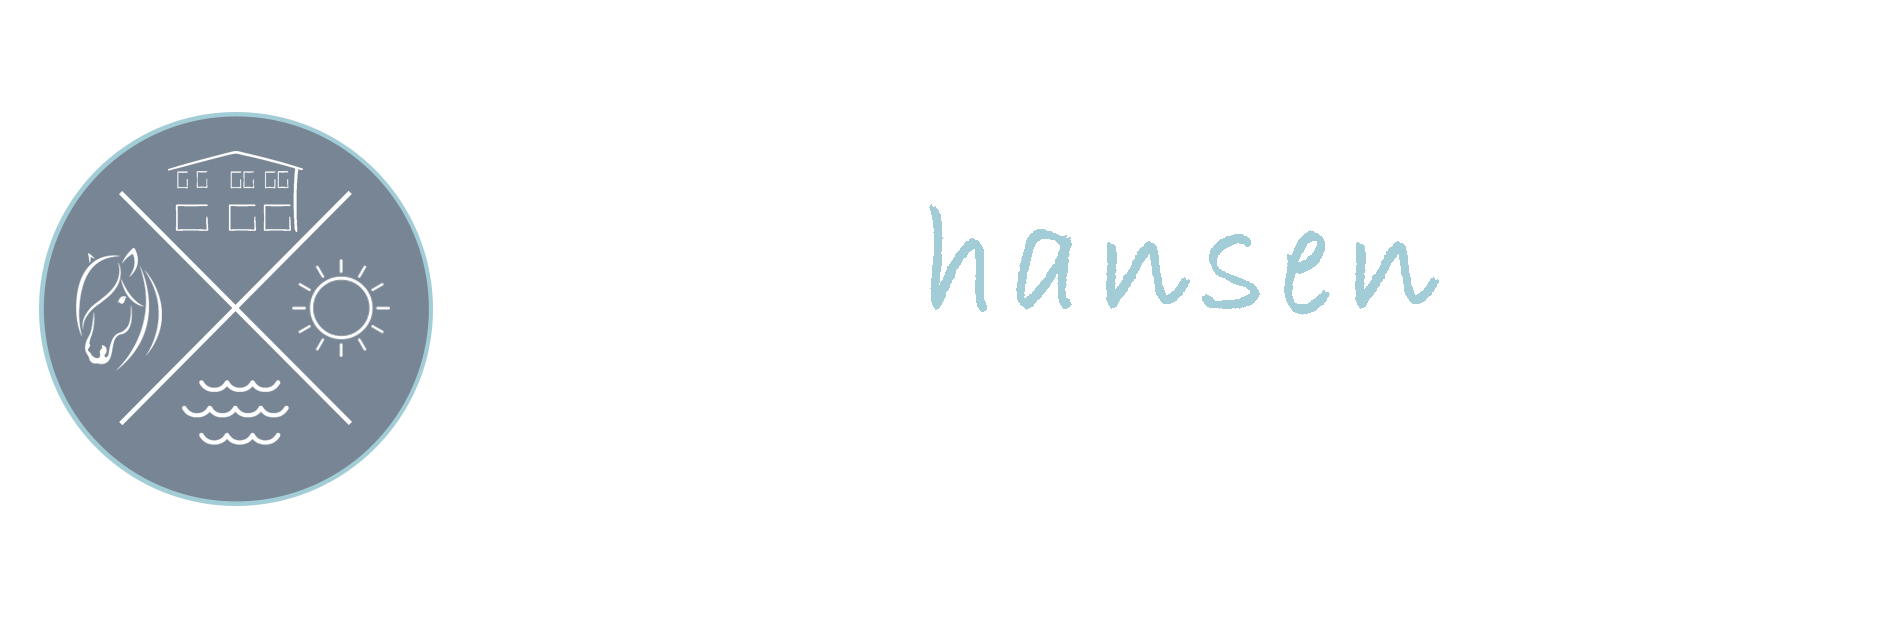 Logo Ramos Hansen Hof